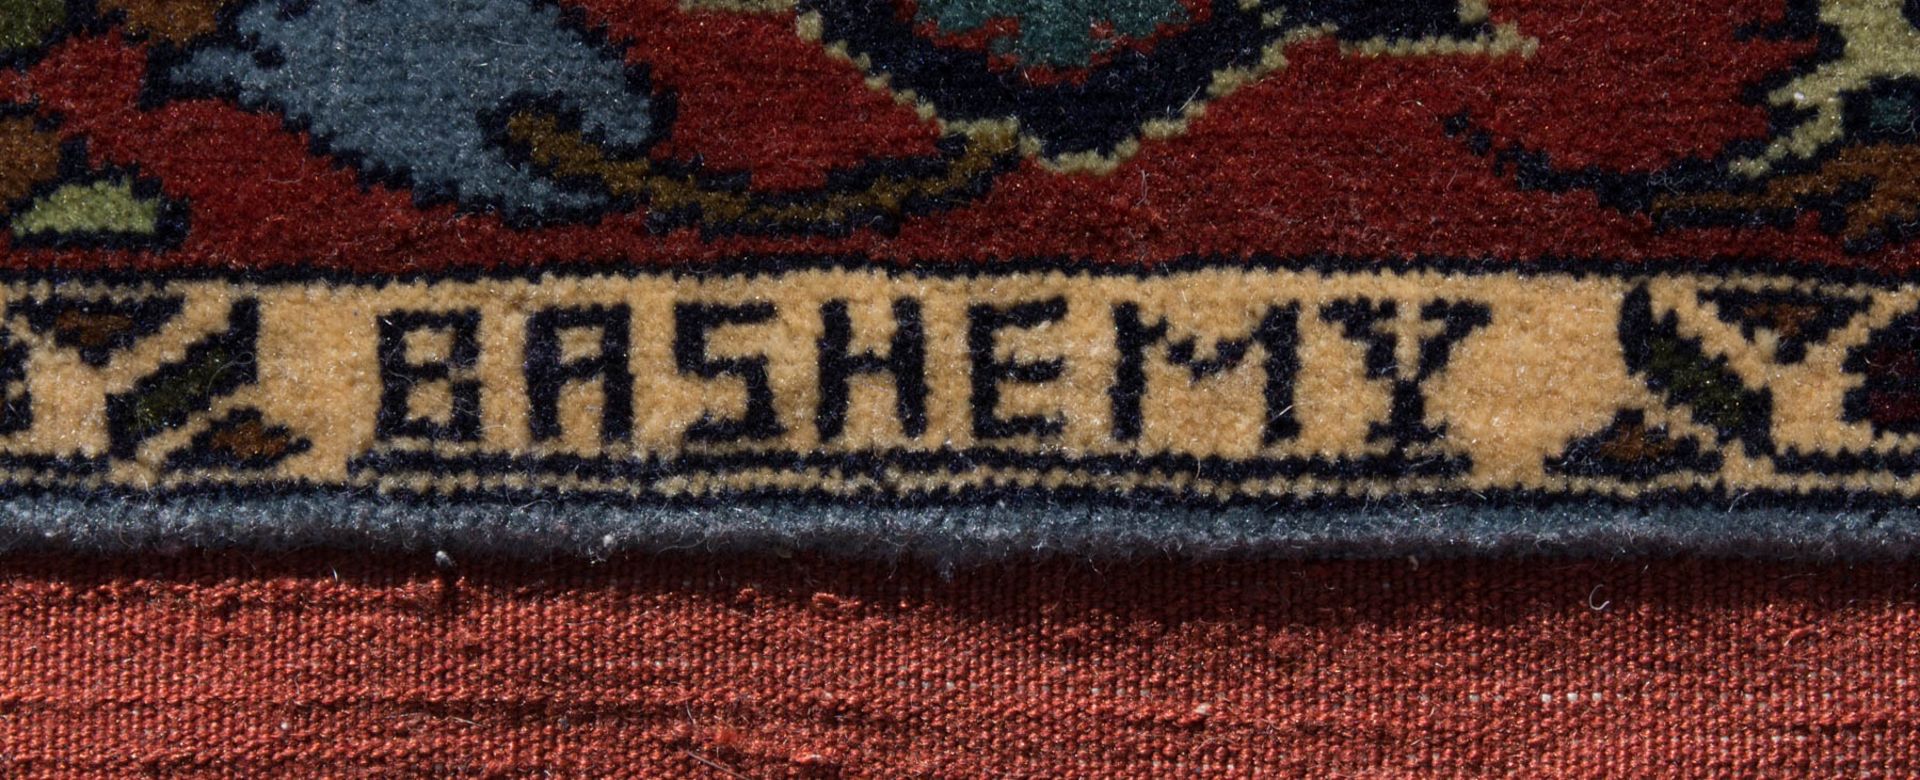 Persischer Gochan, Baumwolle.Maße: 370 cm x 280 cm. - Bild 2 aus 6